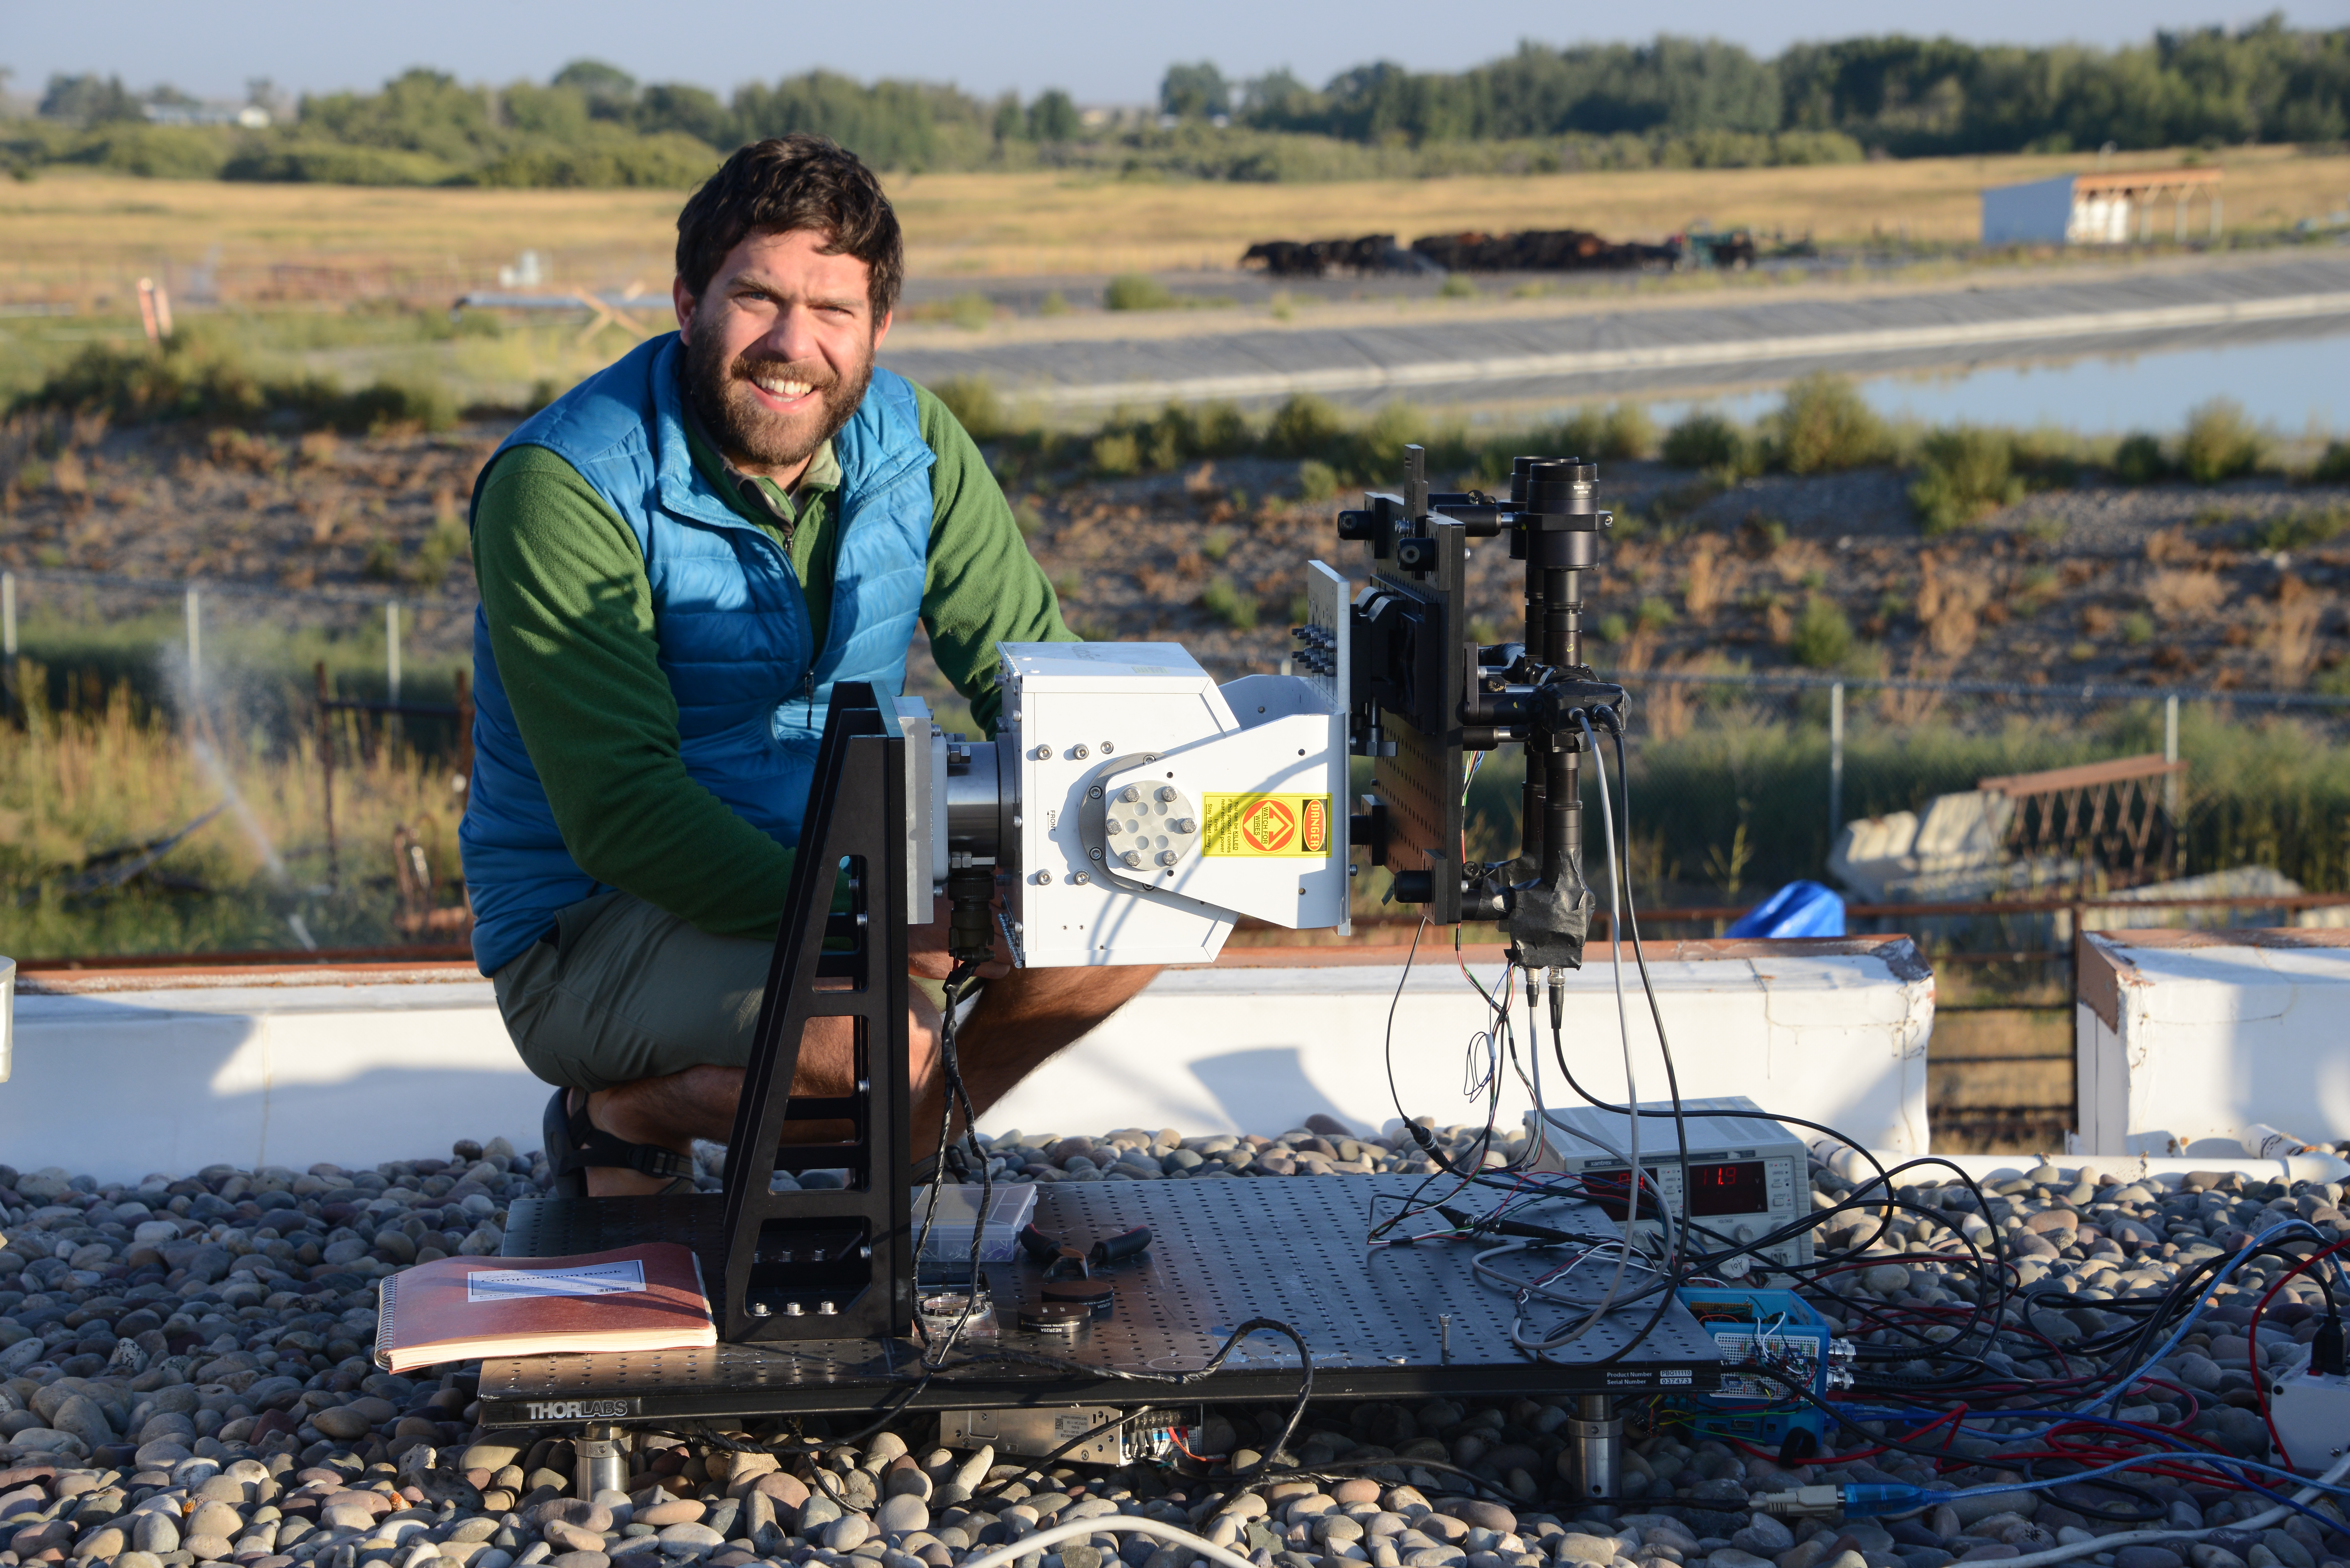 Optics graduate student preparing optical sensor at field experiment